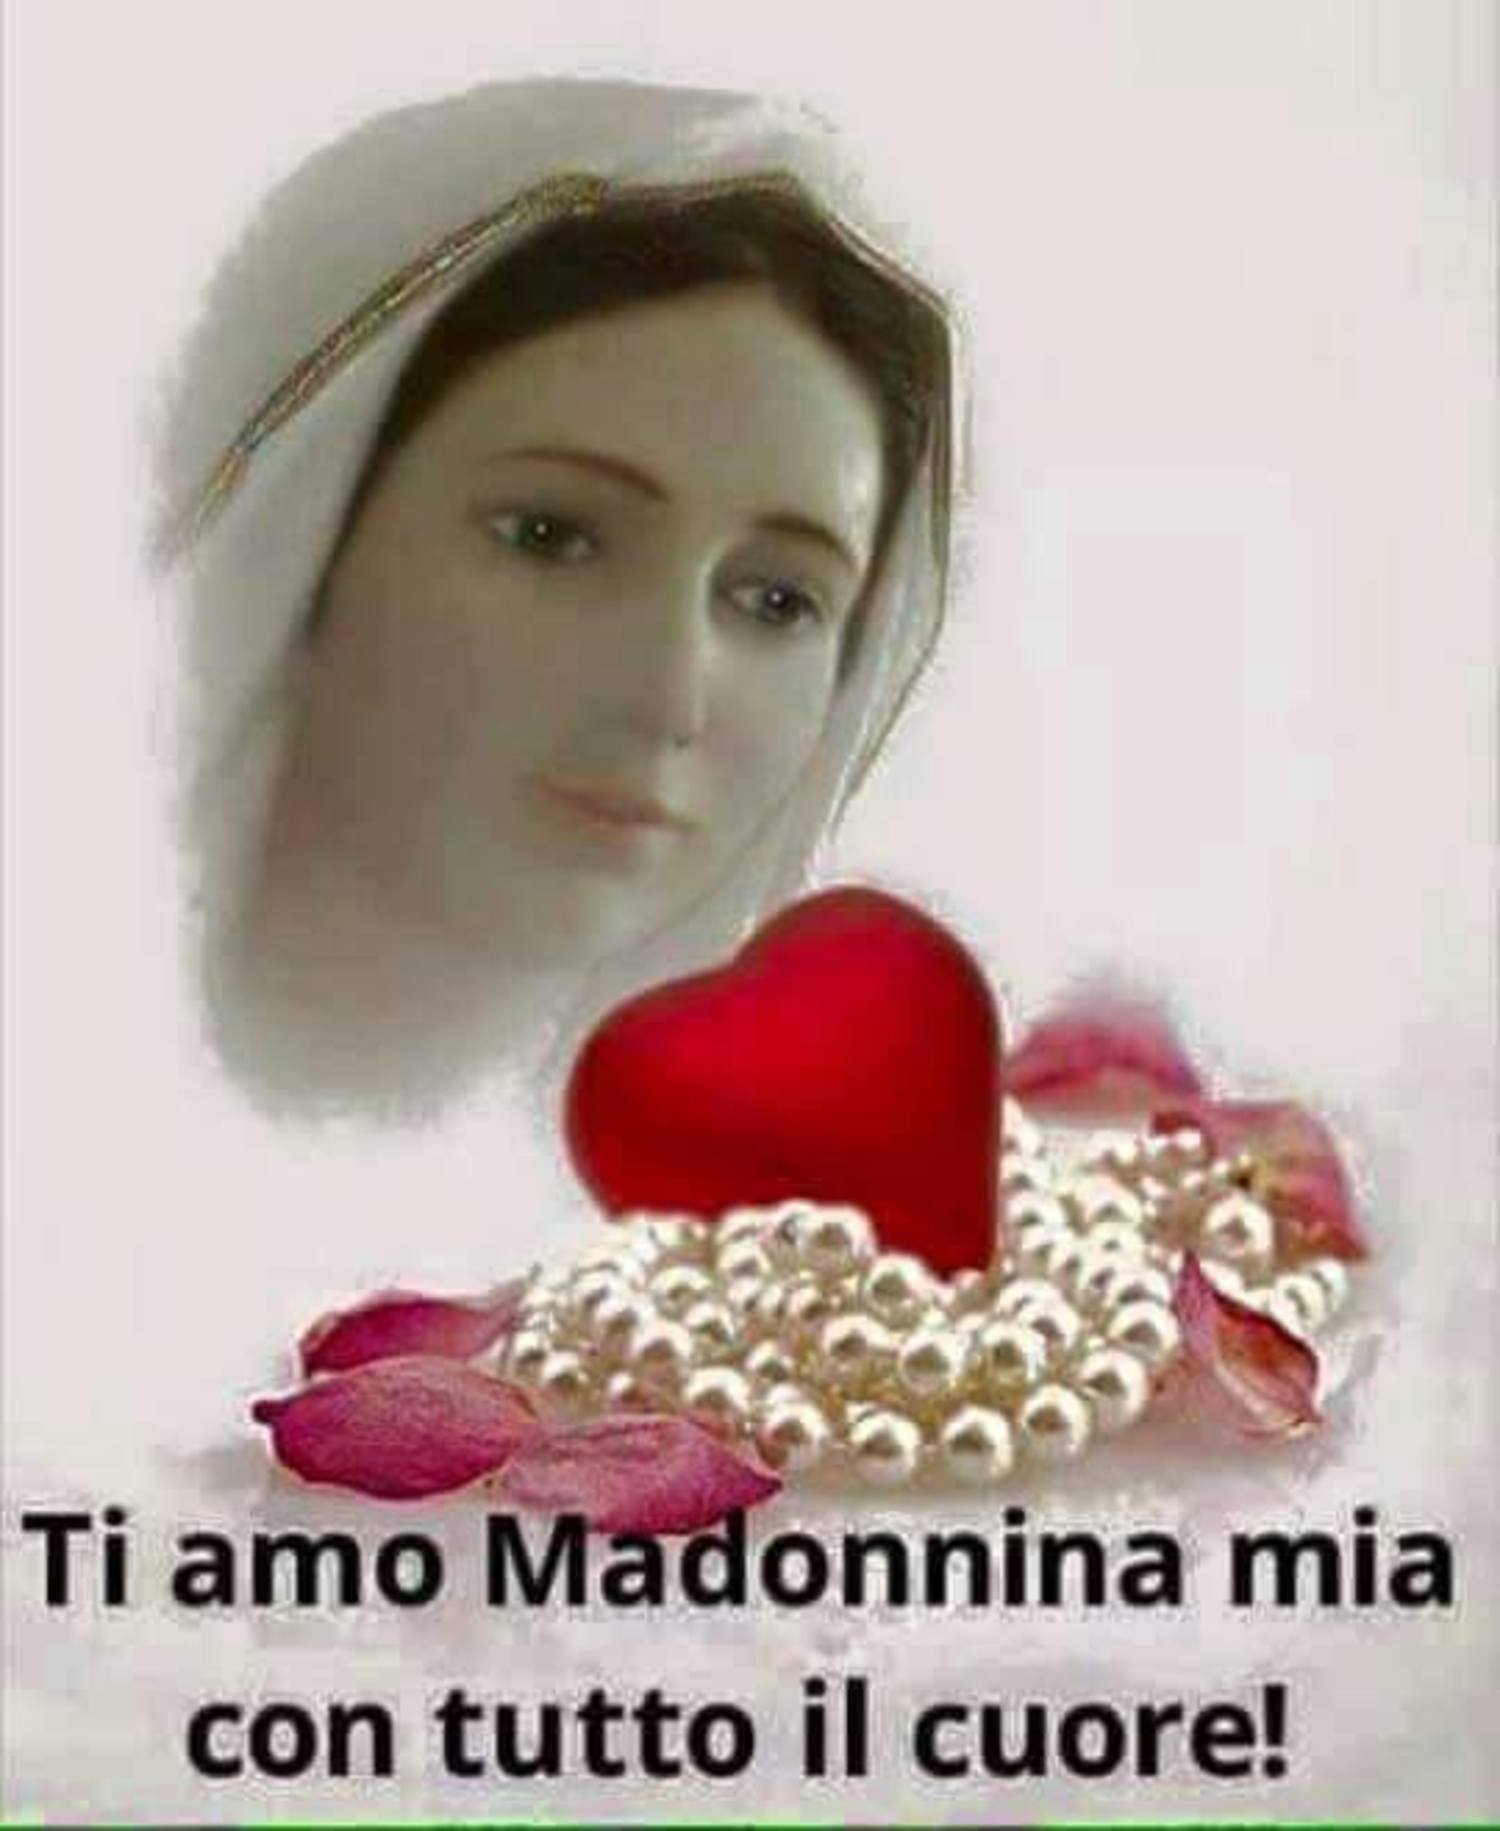 Immagini con la Madonna per Facebook 4571